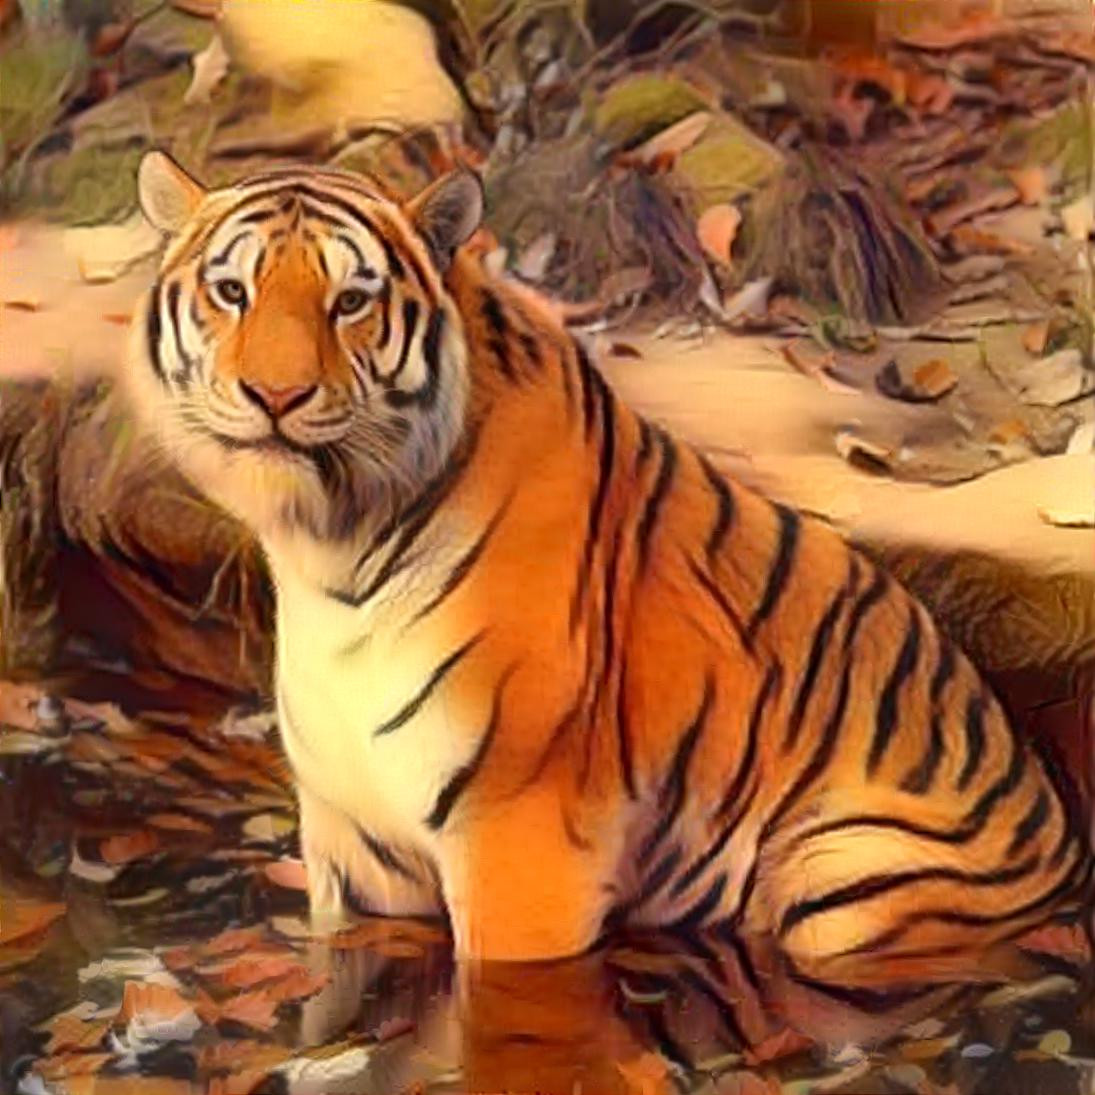 Tiger [1.2MP]